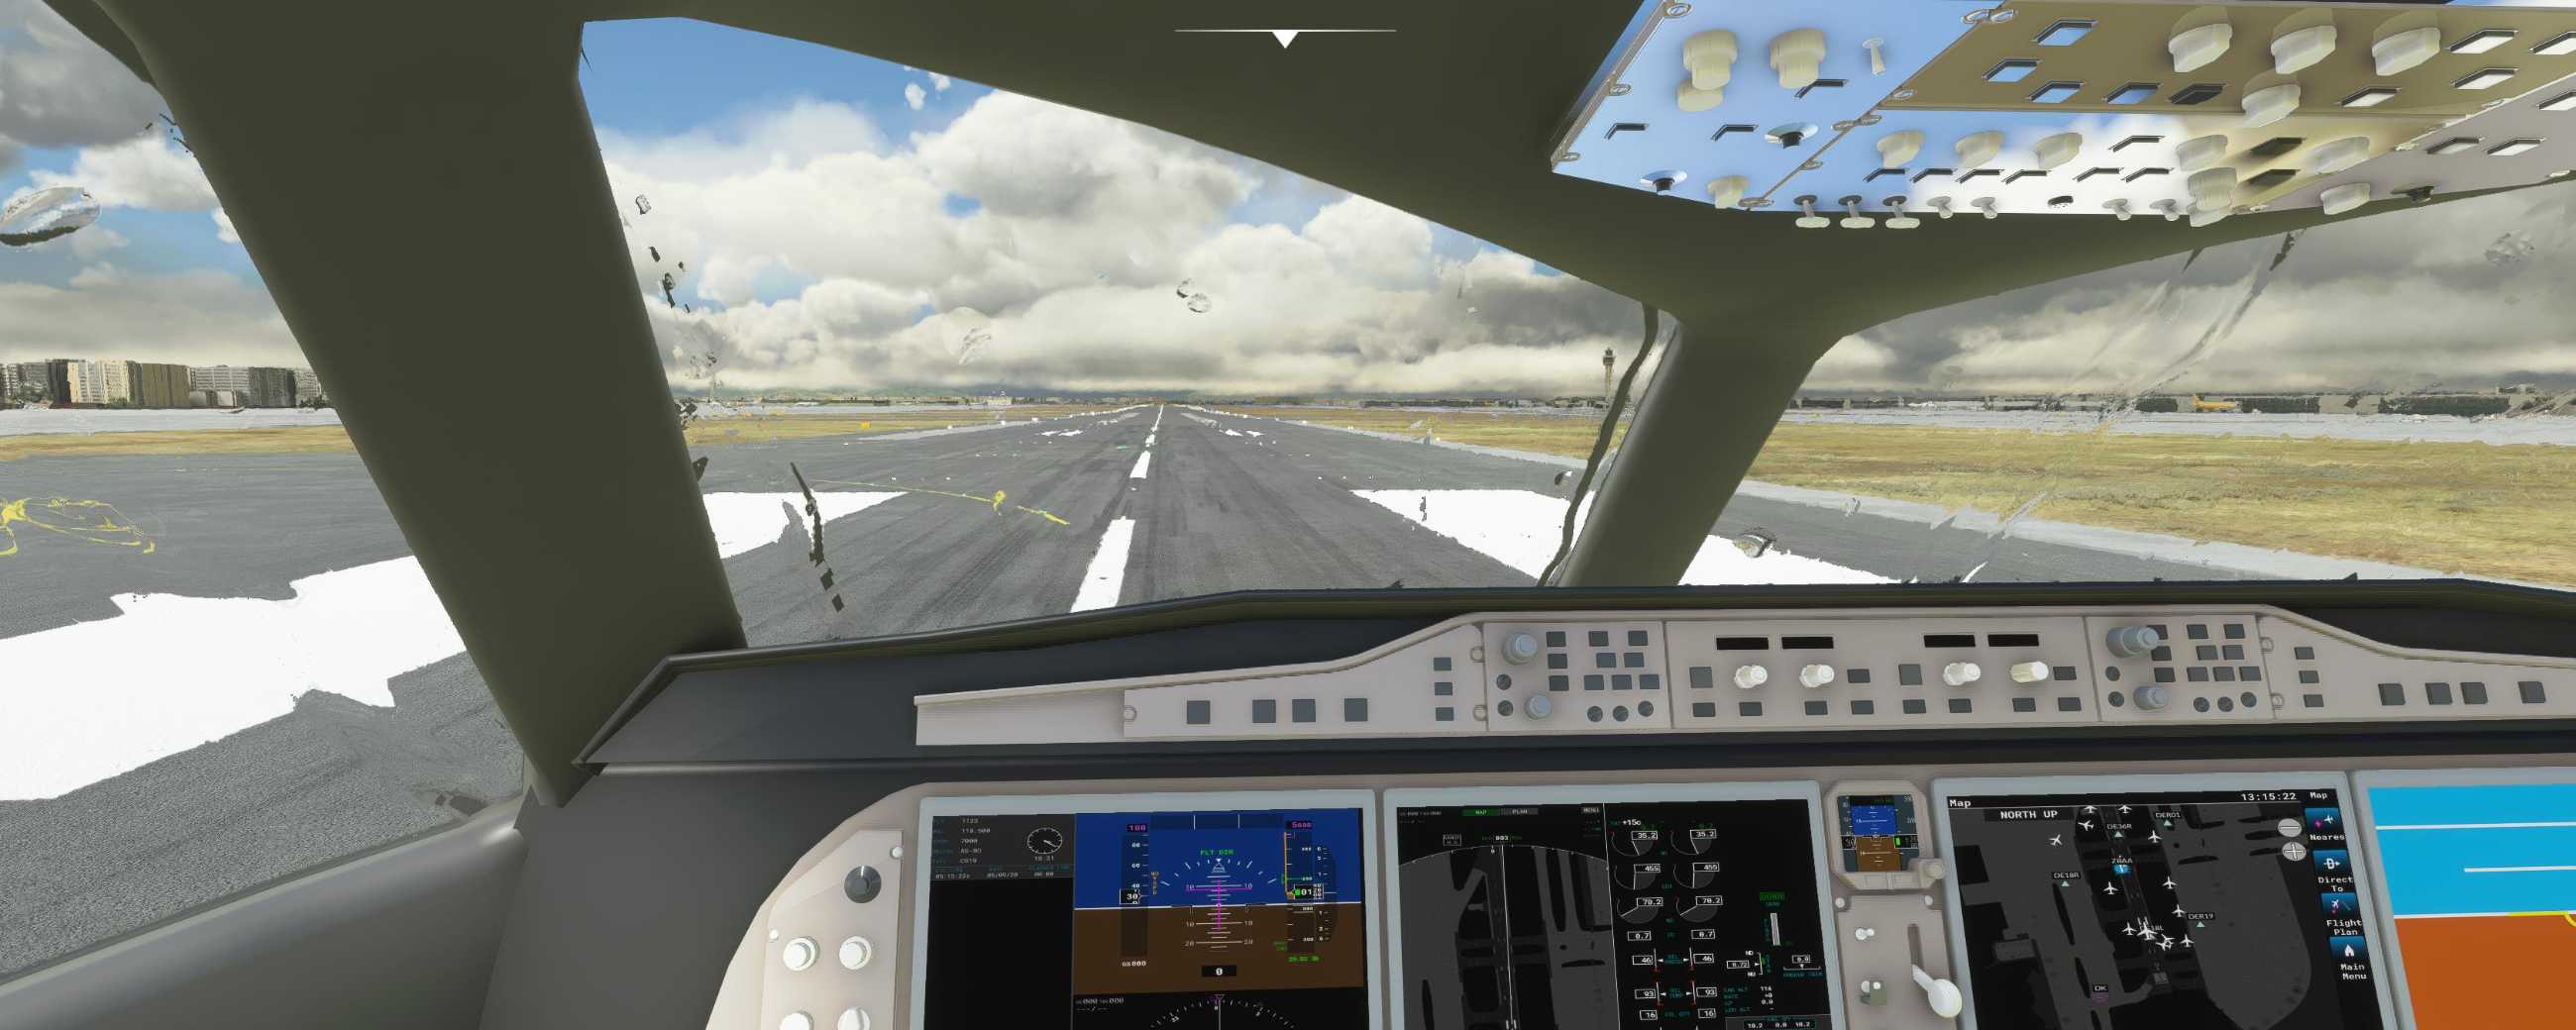 FYCYC-C919 国产大飞机机模 微软模拟飞行演示-9260 